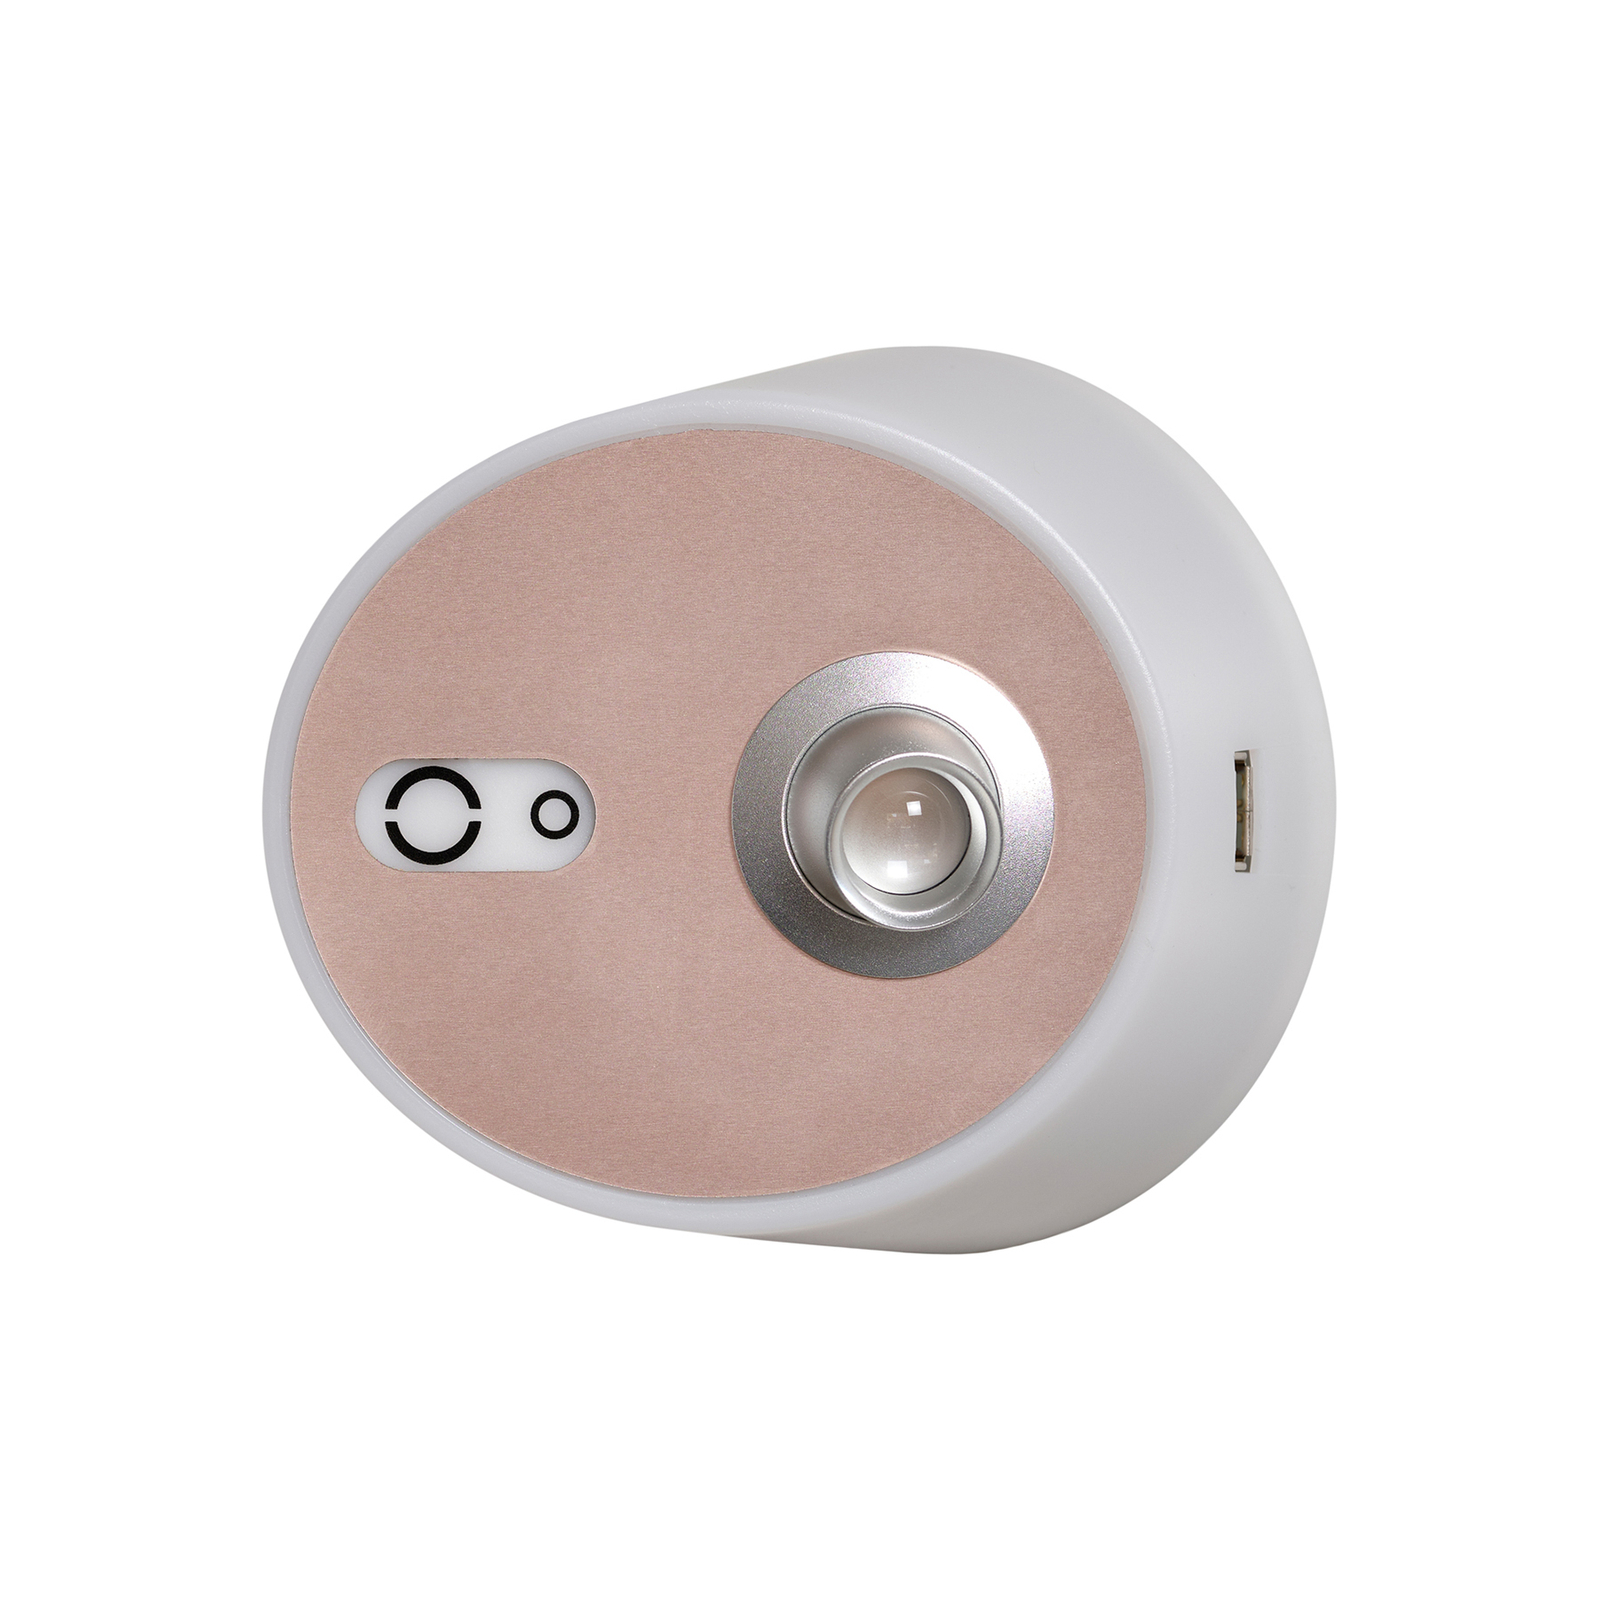 Zoom LED stenska svetilka, reflektor, izhod USB, roza-medena